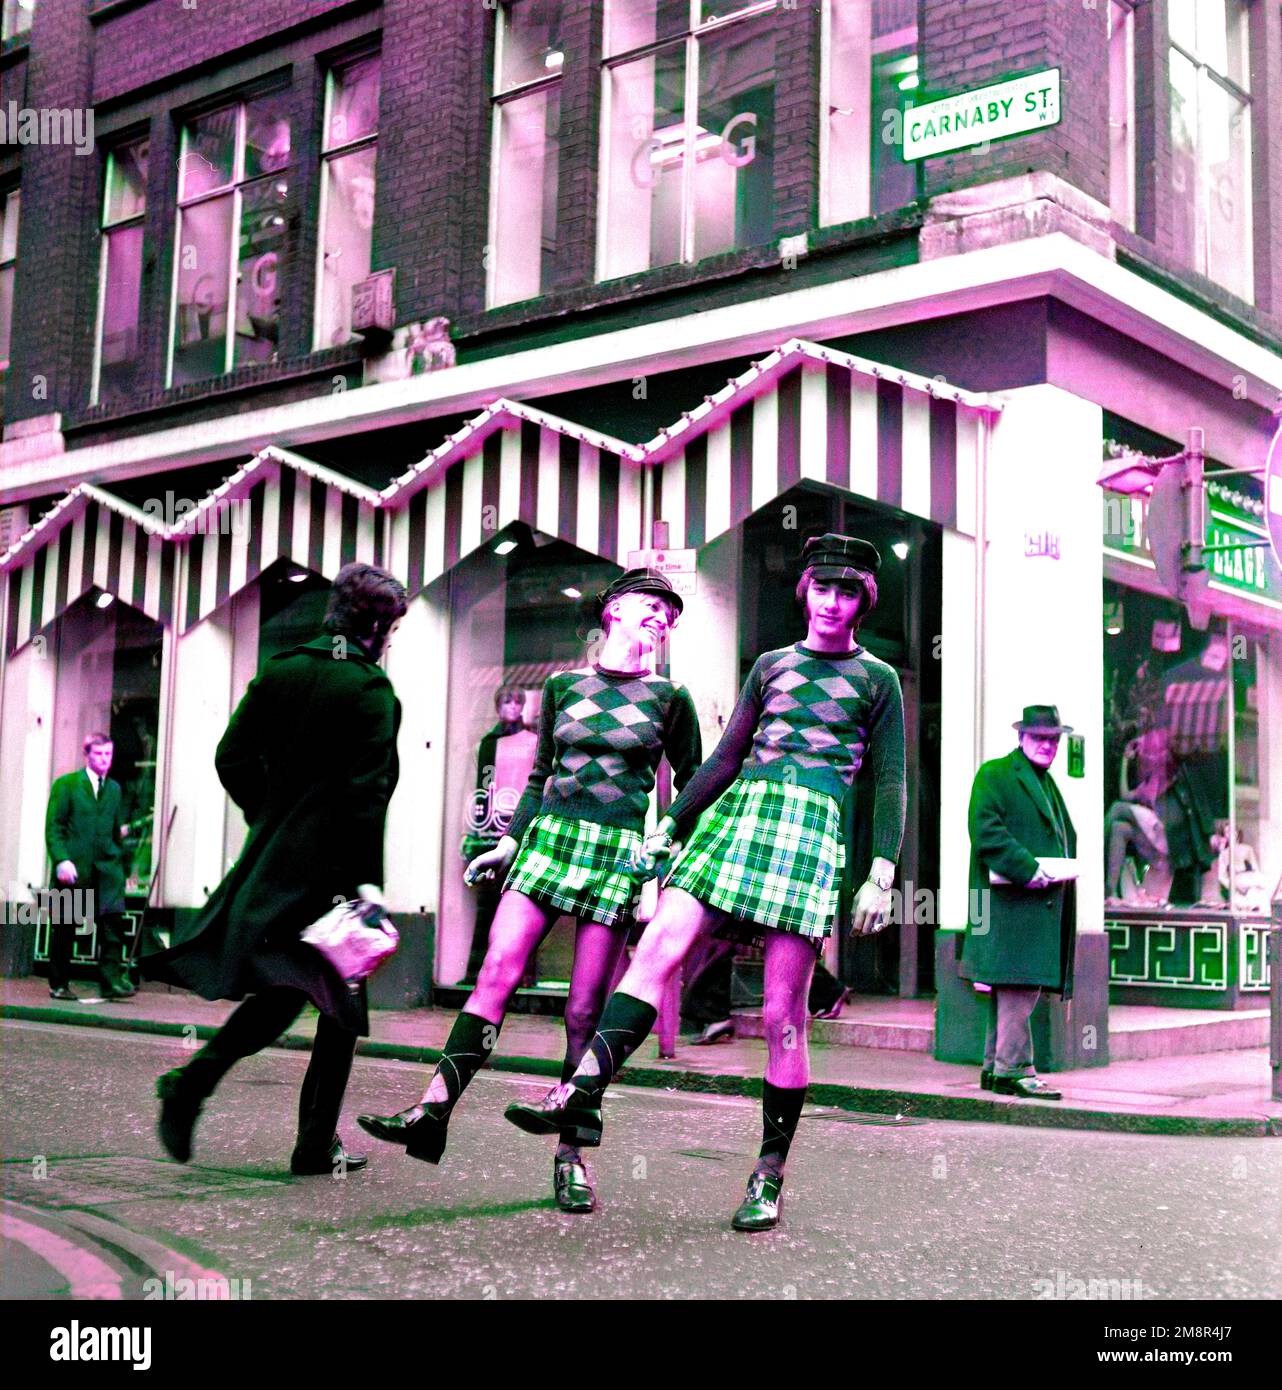 Un uomo e una donna che si posano in abiti identici di jumper e gonna nella elegante Carnaby Street, Londra 1968. Immagine di post-produzione colorata. Foto di Tony Henshaw Archivio Foto Stock